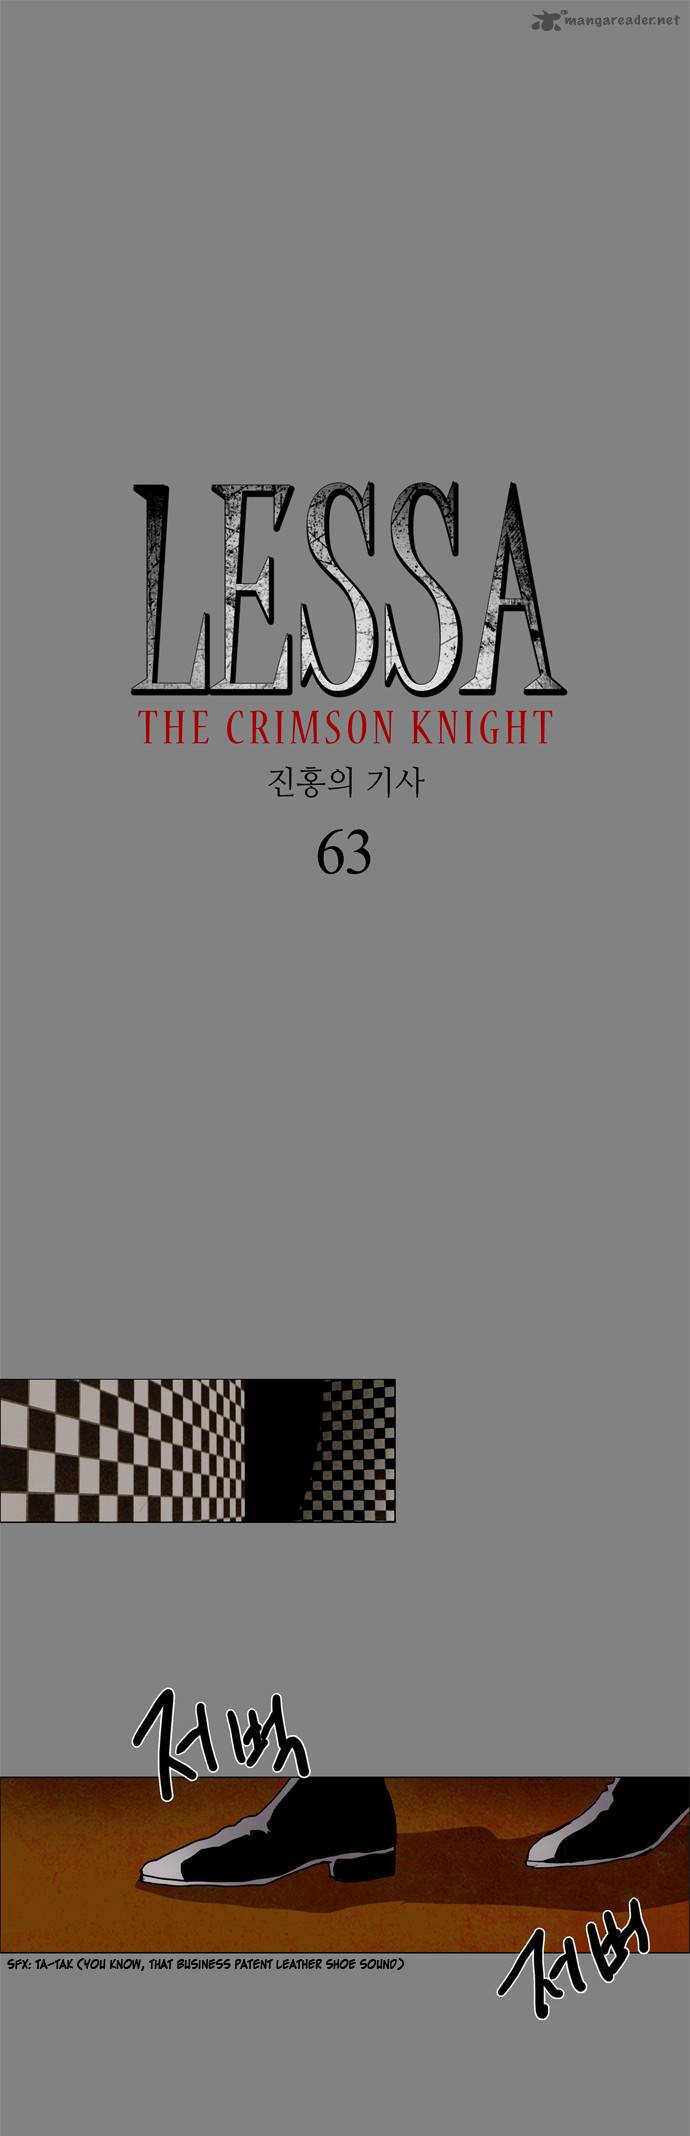 lessa_the_crimson_knight_63_6